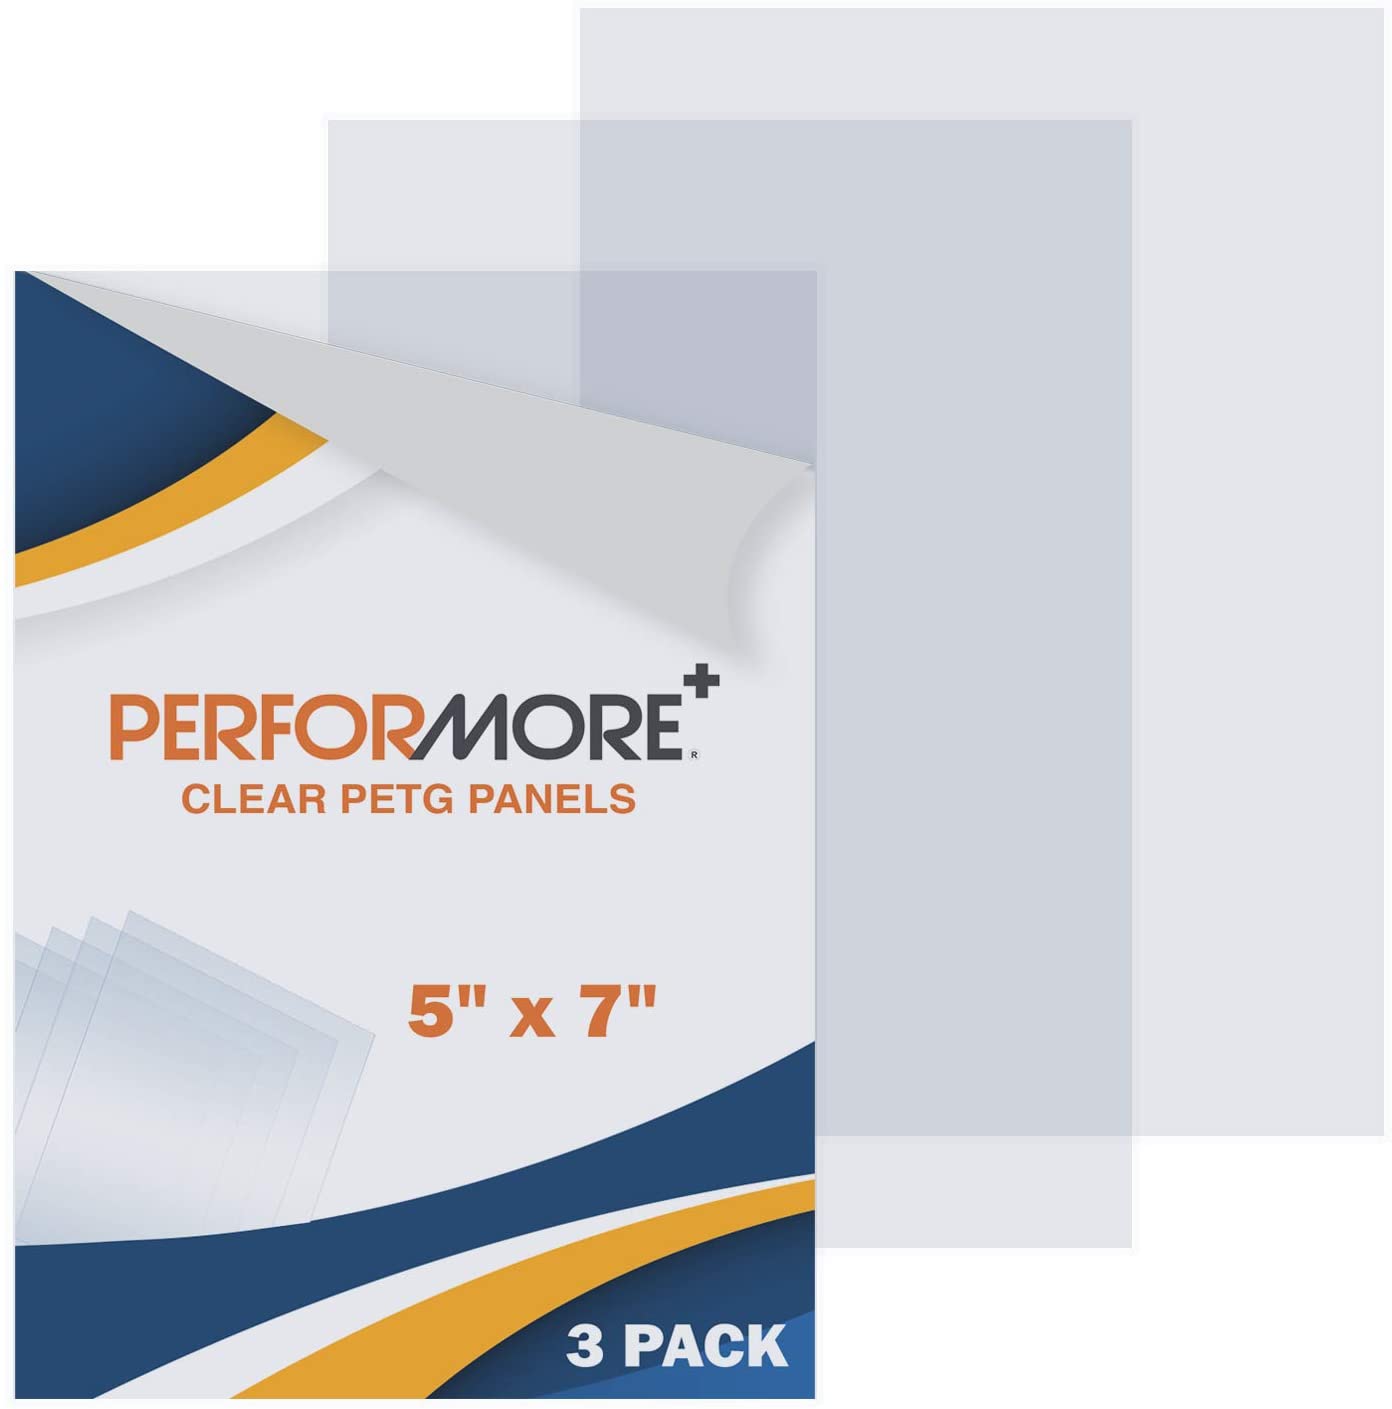  10 Pack 12x12x.02” Clear Plastic Sheet, Plexiglass